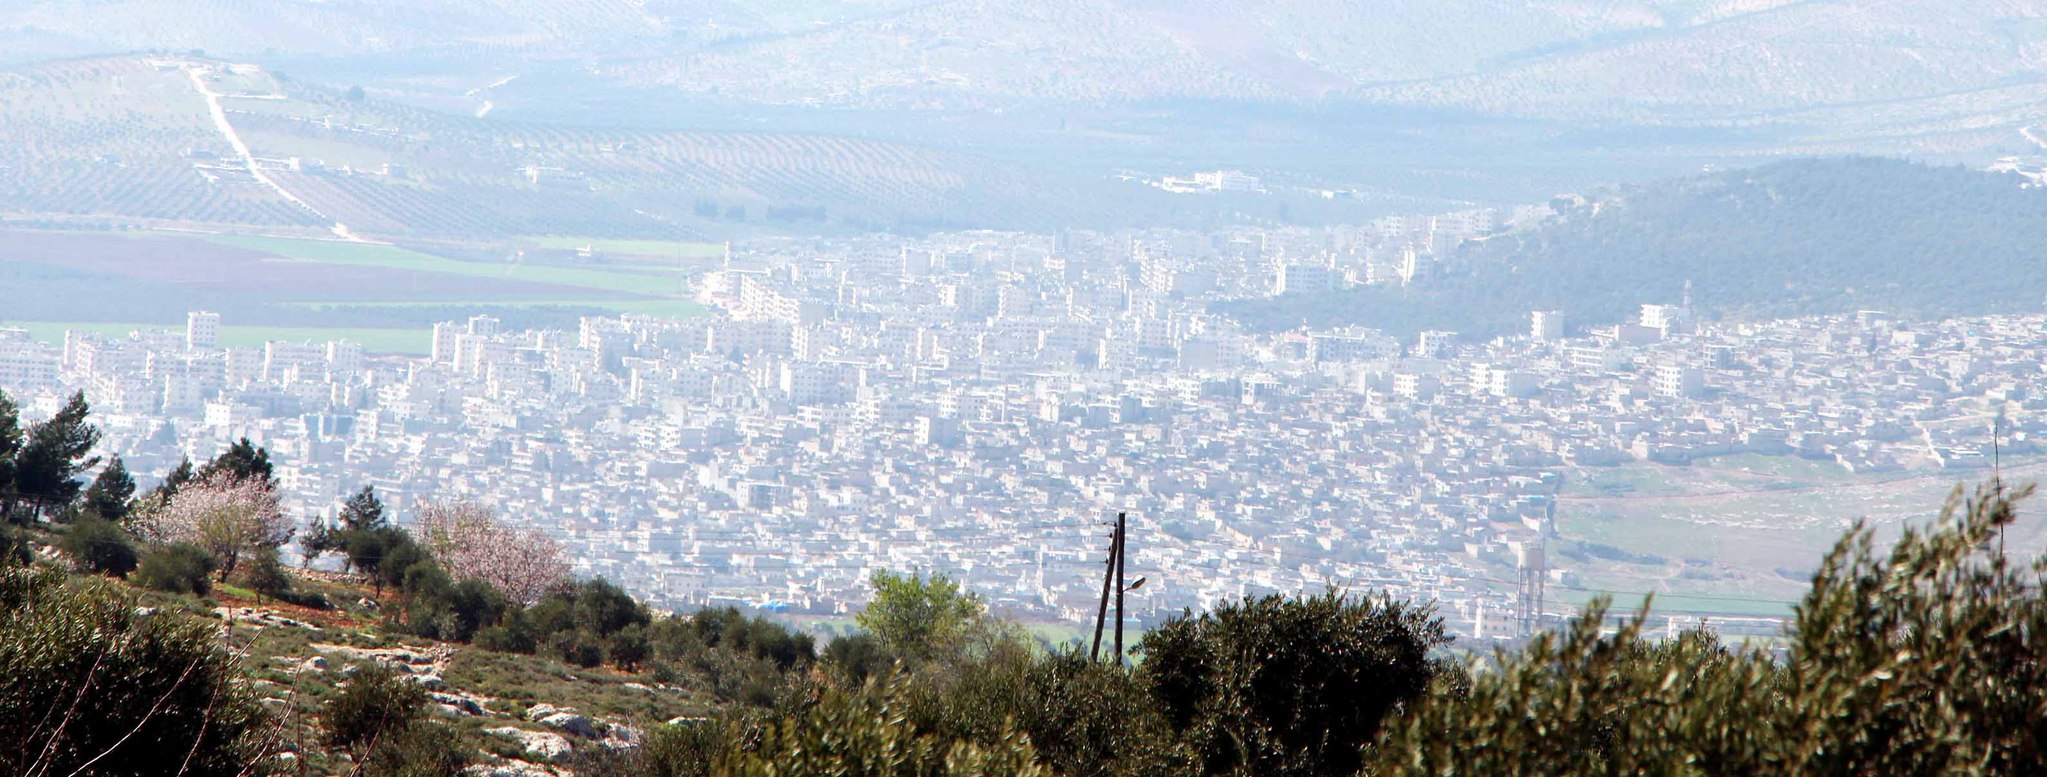 Türk askeri Afrin’in tepelerinde